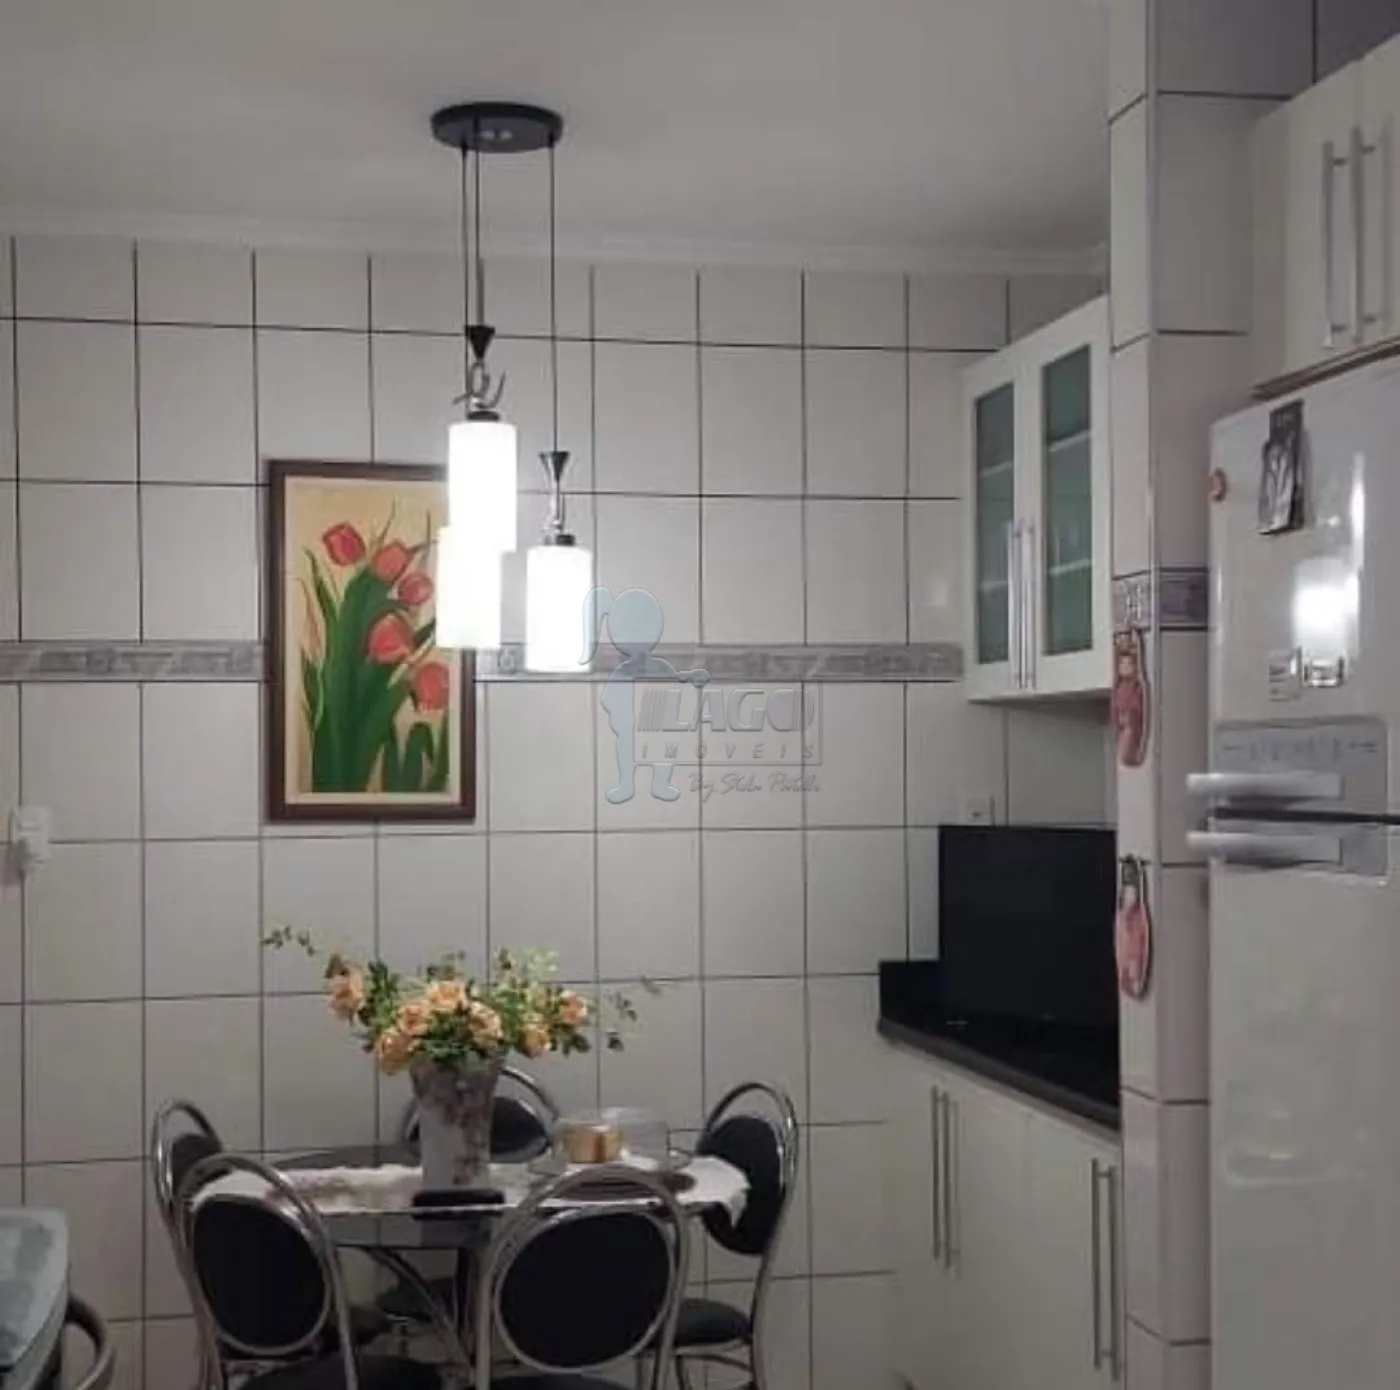 Comprar Casa / Padrão em Ribeirão Preto R$ 600.000,00 - Foto 3